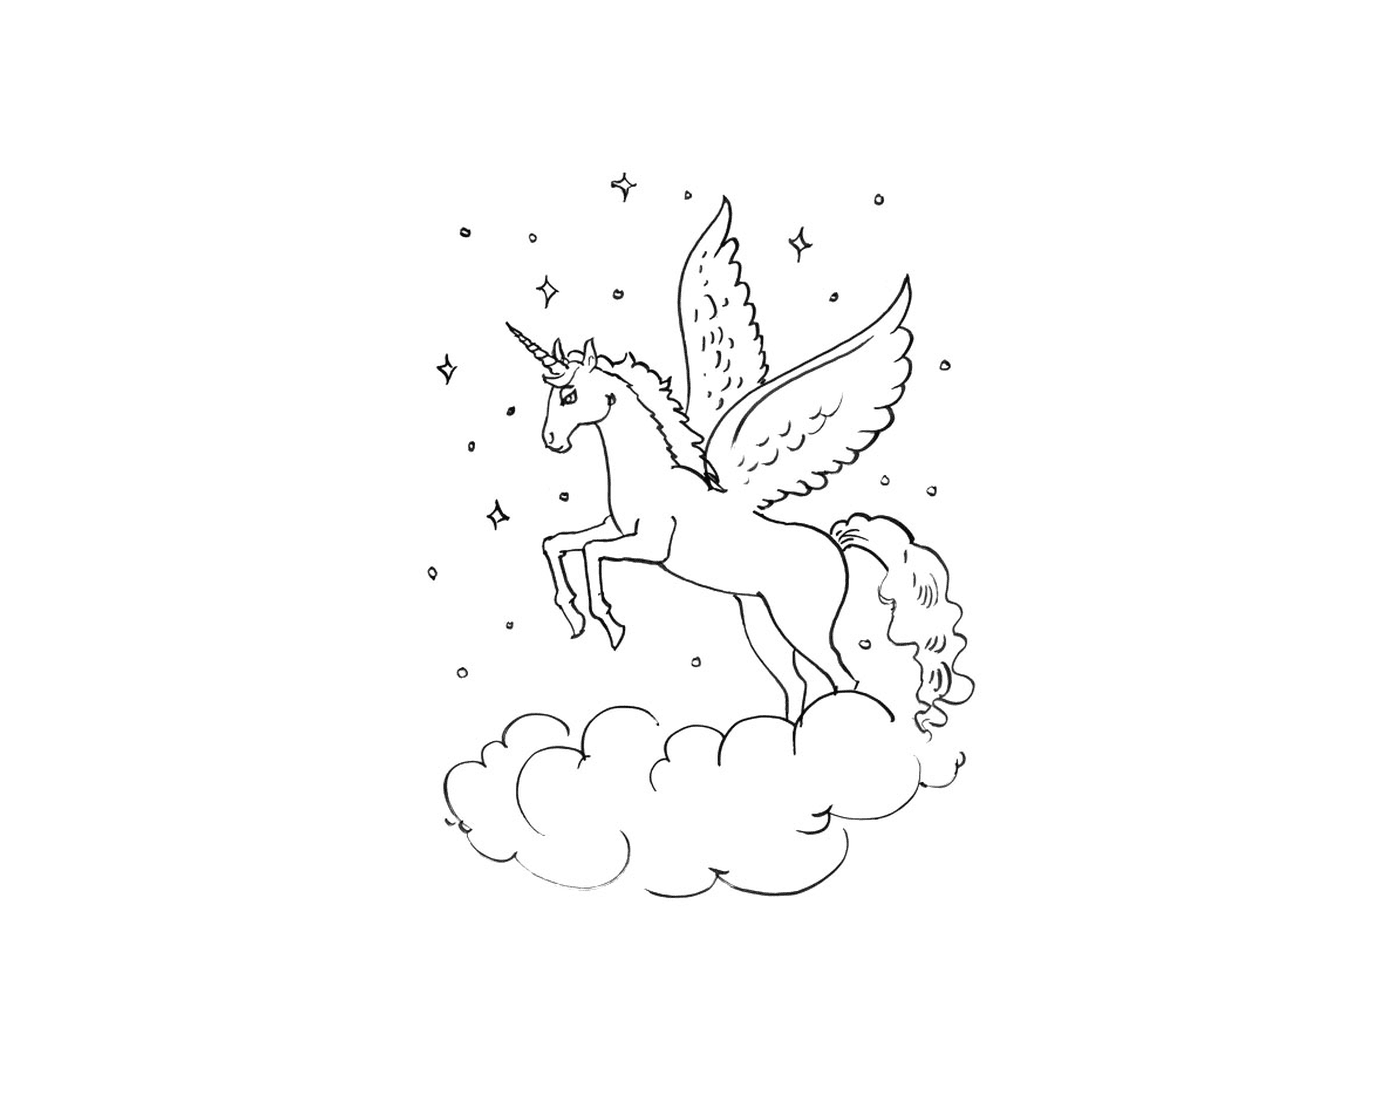  Единорог с крыльями, летящими над облаком 